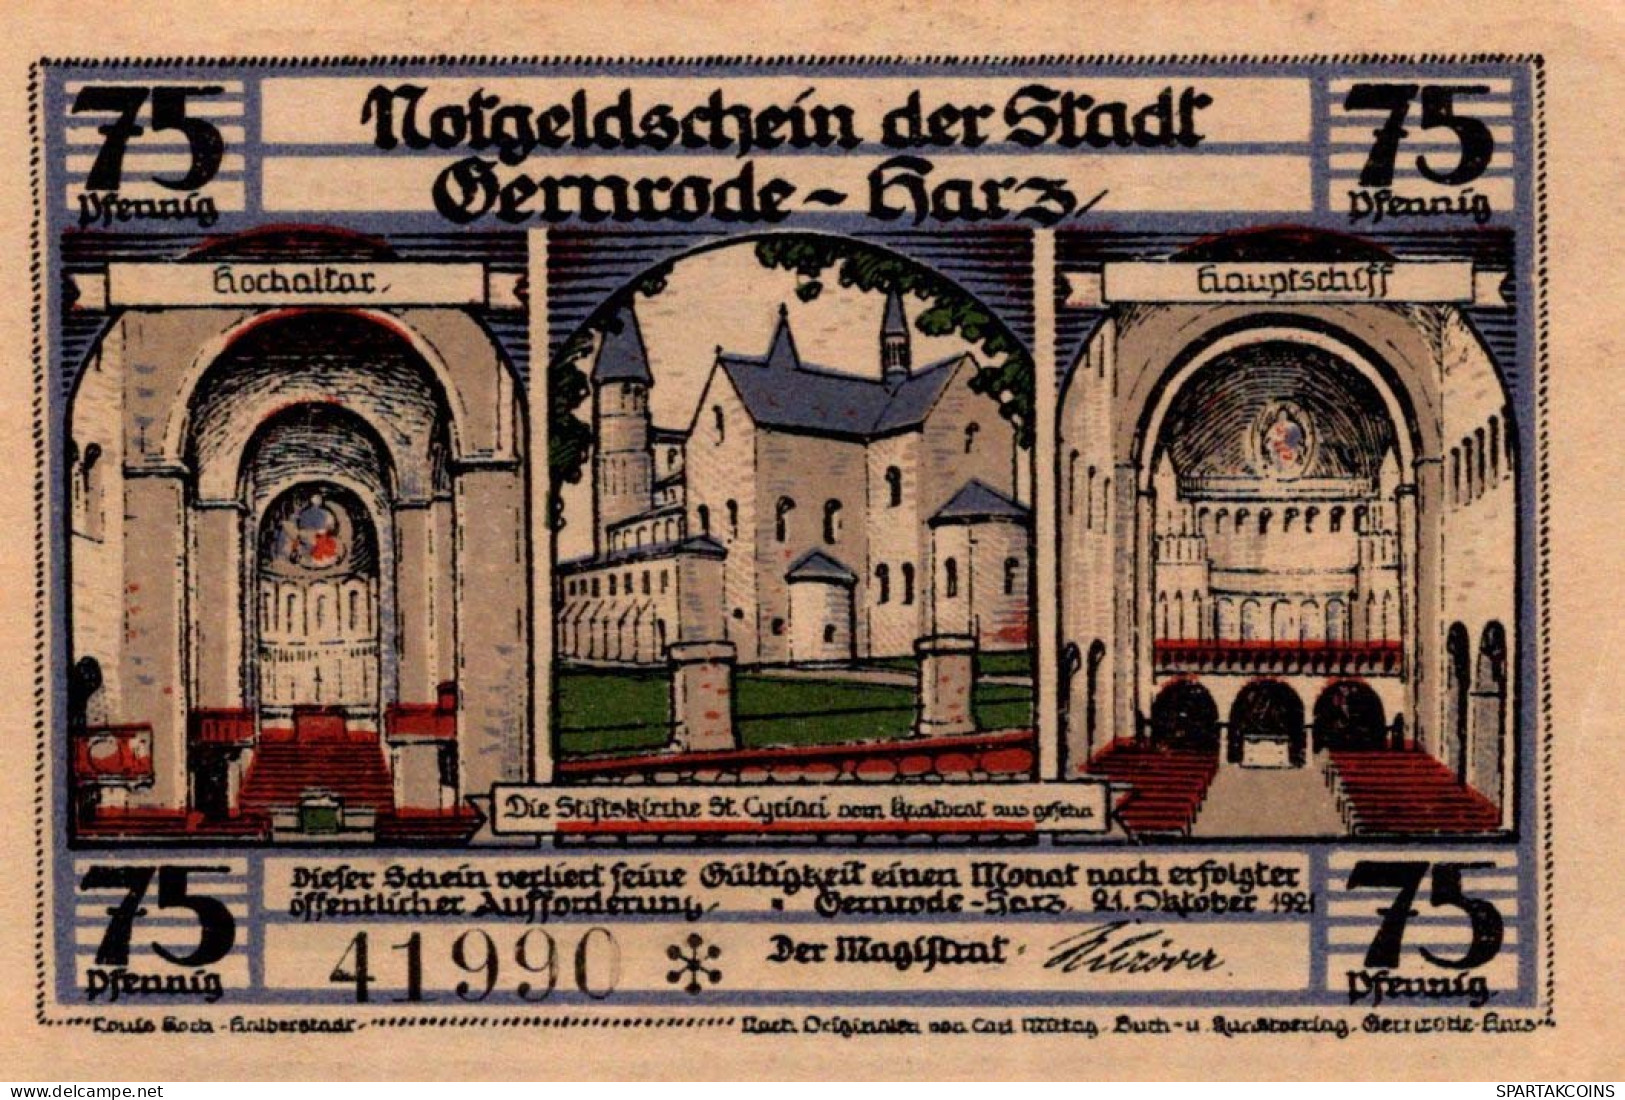 75 PFENNIG 1921 Stadt GERNRODE IM HARZ Anhalt UNC DEUTSCHLAND Notgeld #PH571 - [11] Local Banknote Issues